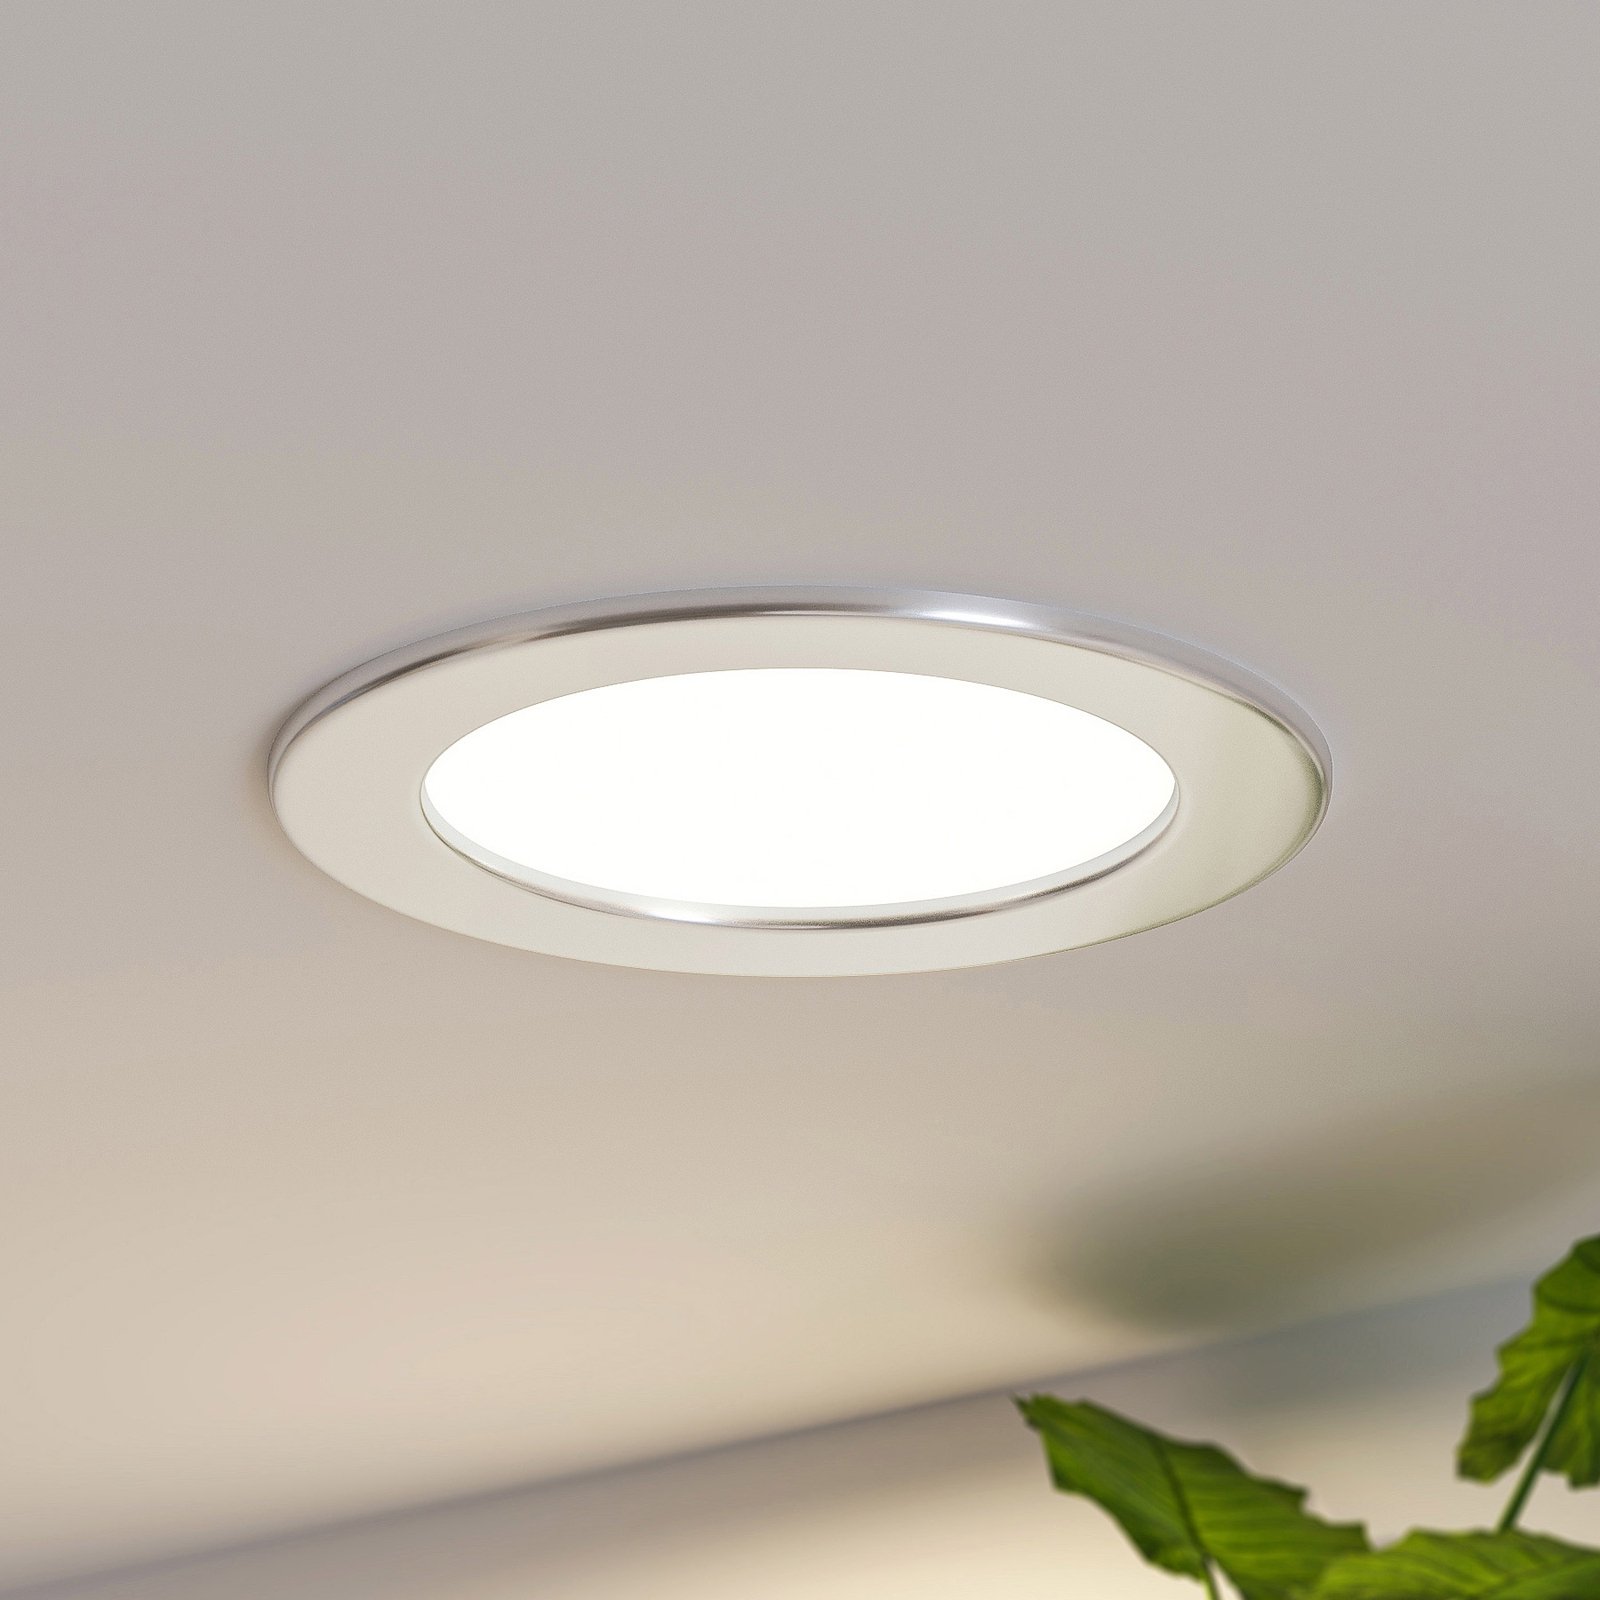 Prios LED-Einbaulampe Cadance, silber, 17 cm, dimmbar